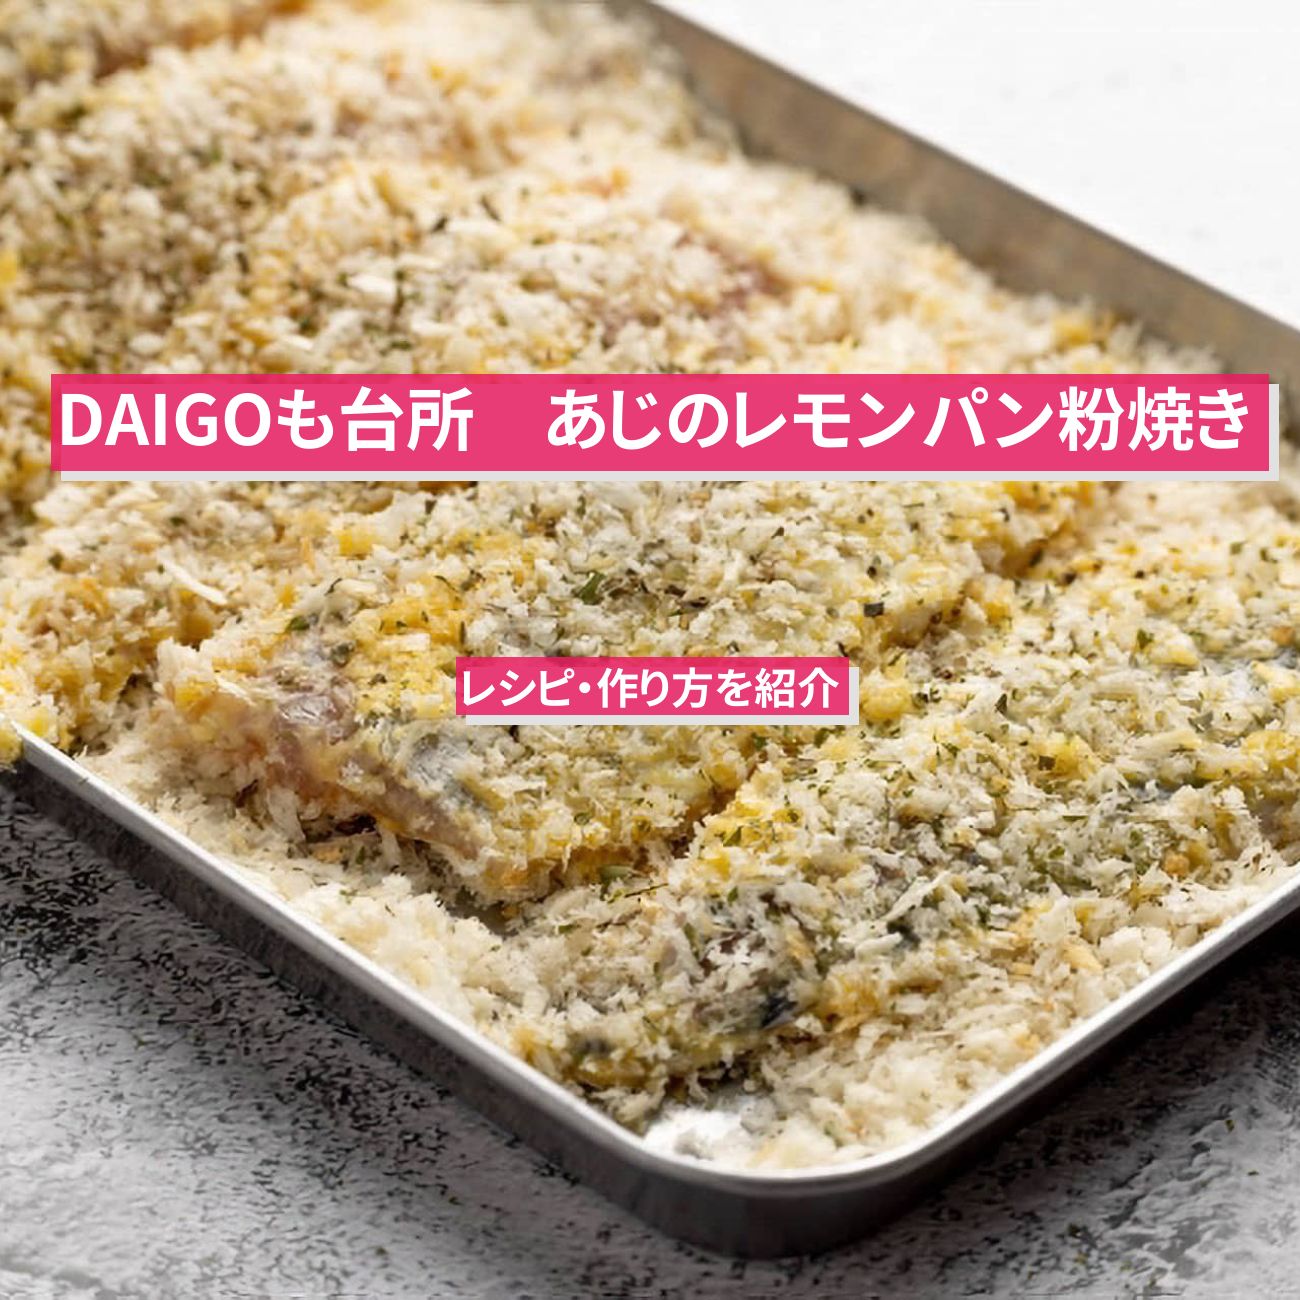 【DAIGOも台所】『あじのレモンパン粉焼き』のレシピ・作り方を紹介〔ダイゴも台所〕